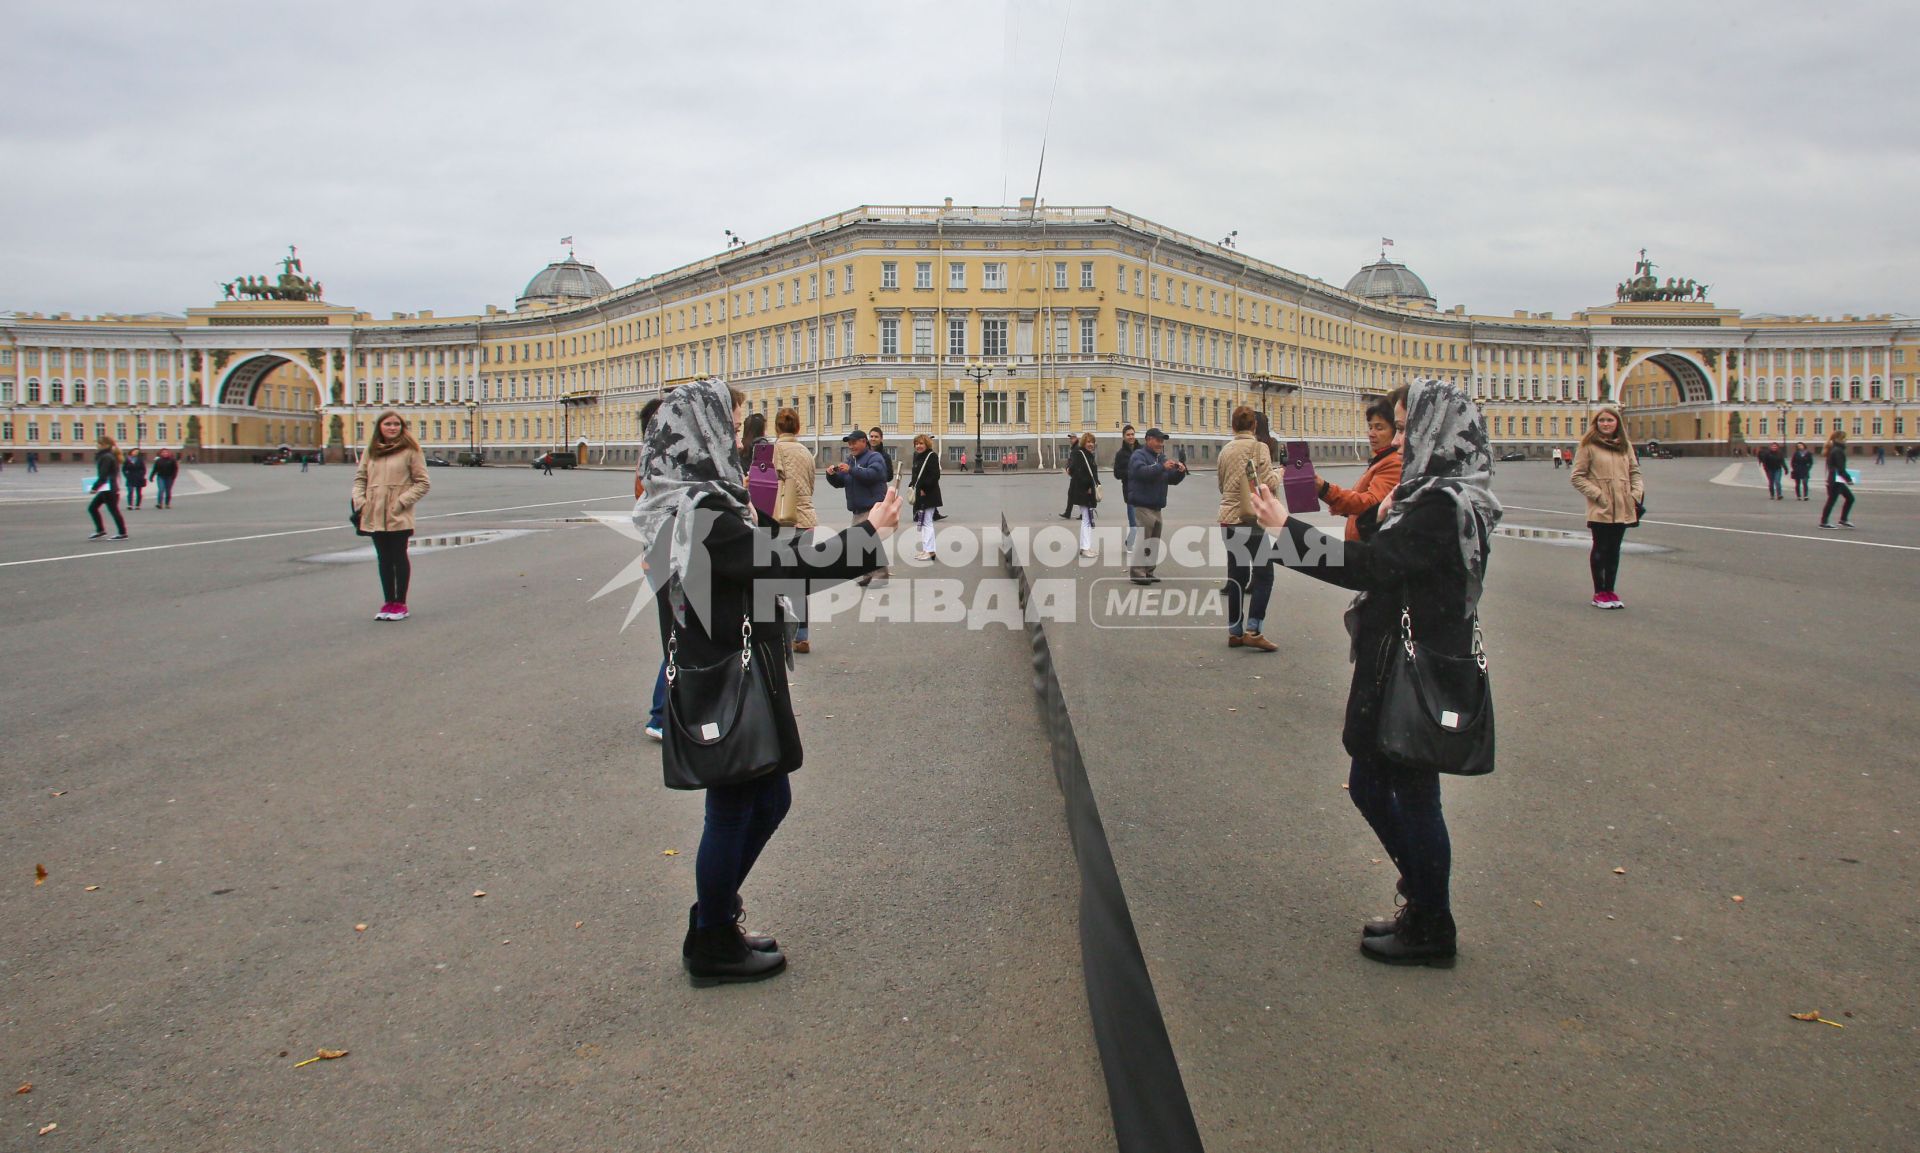 Санкт-Петербург. Зеркальный куб  на Дворцовой площади, установленный для презентации новой модели автомобиля BMW.